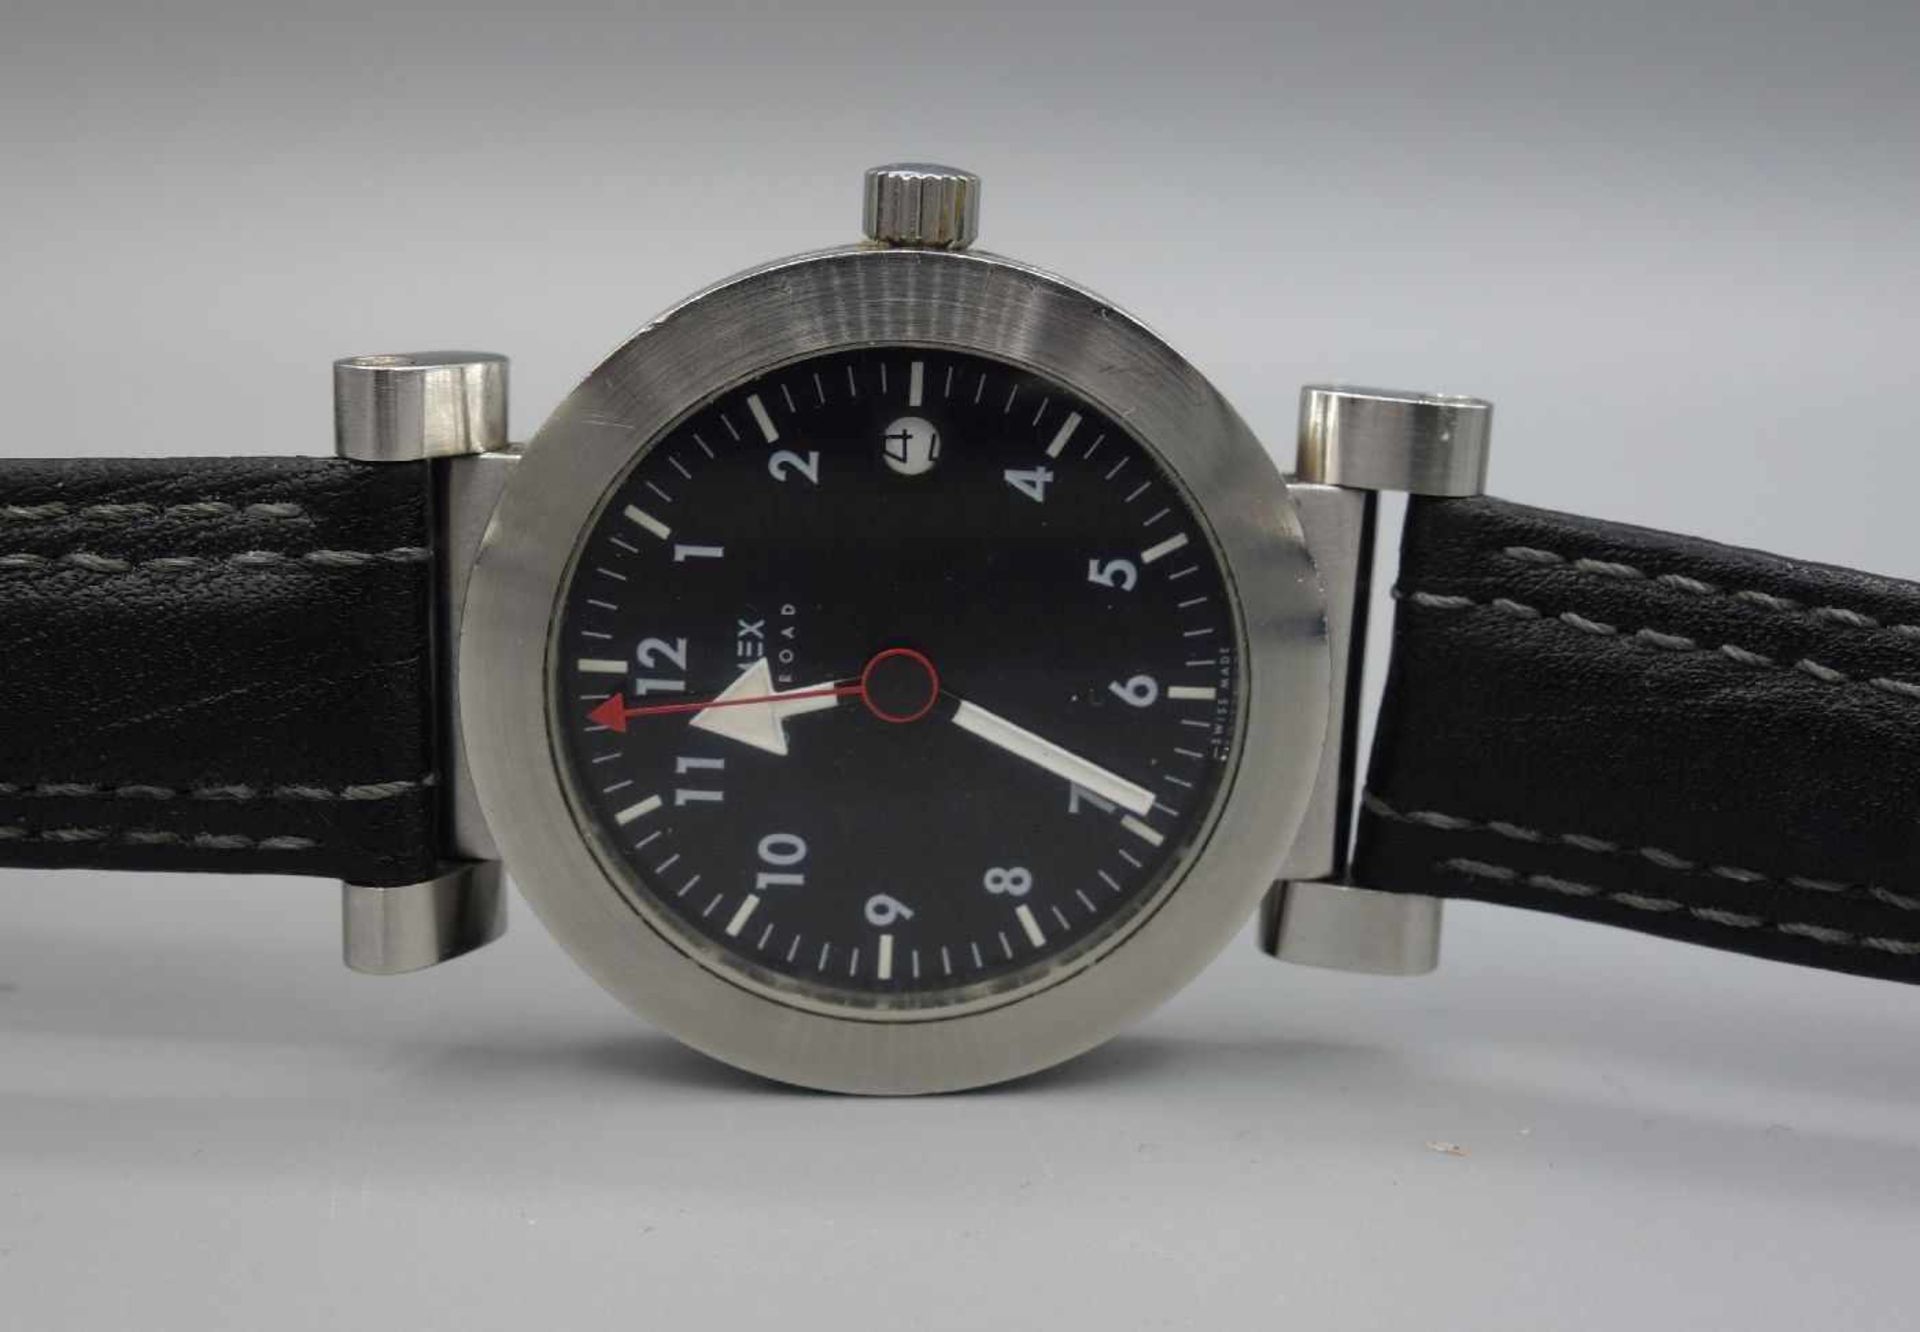 ARMBANDUHR - XEMEX OFFROAD / wristwatch, Quarz, Schweiz. Rundes Edelstahlgehäuse an schwarzem - Bild 2 aus 7